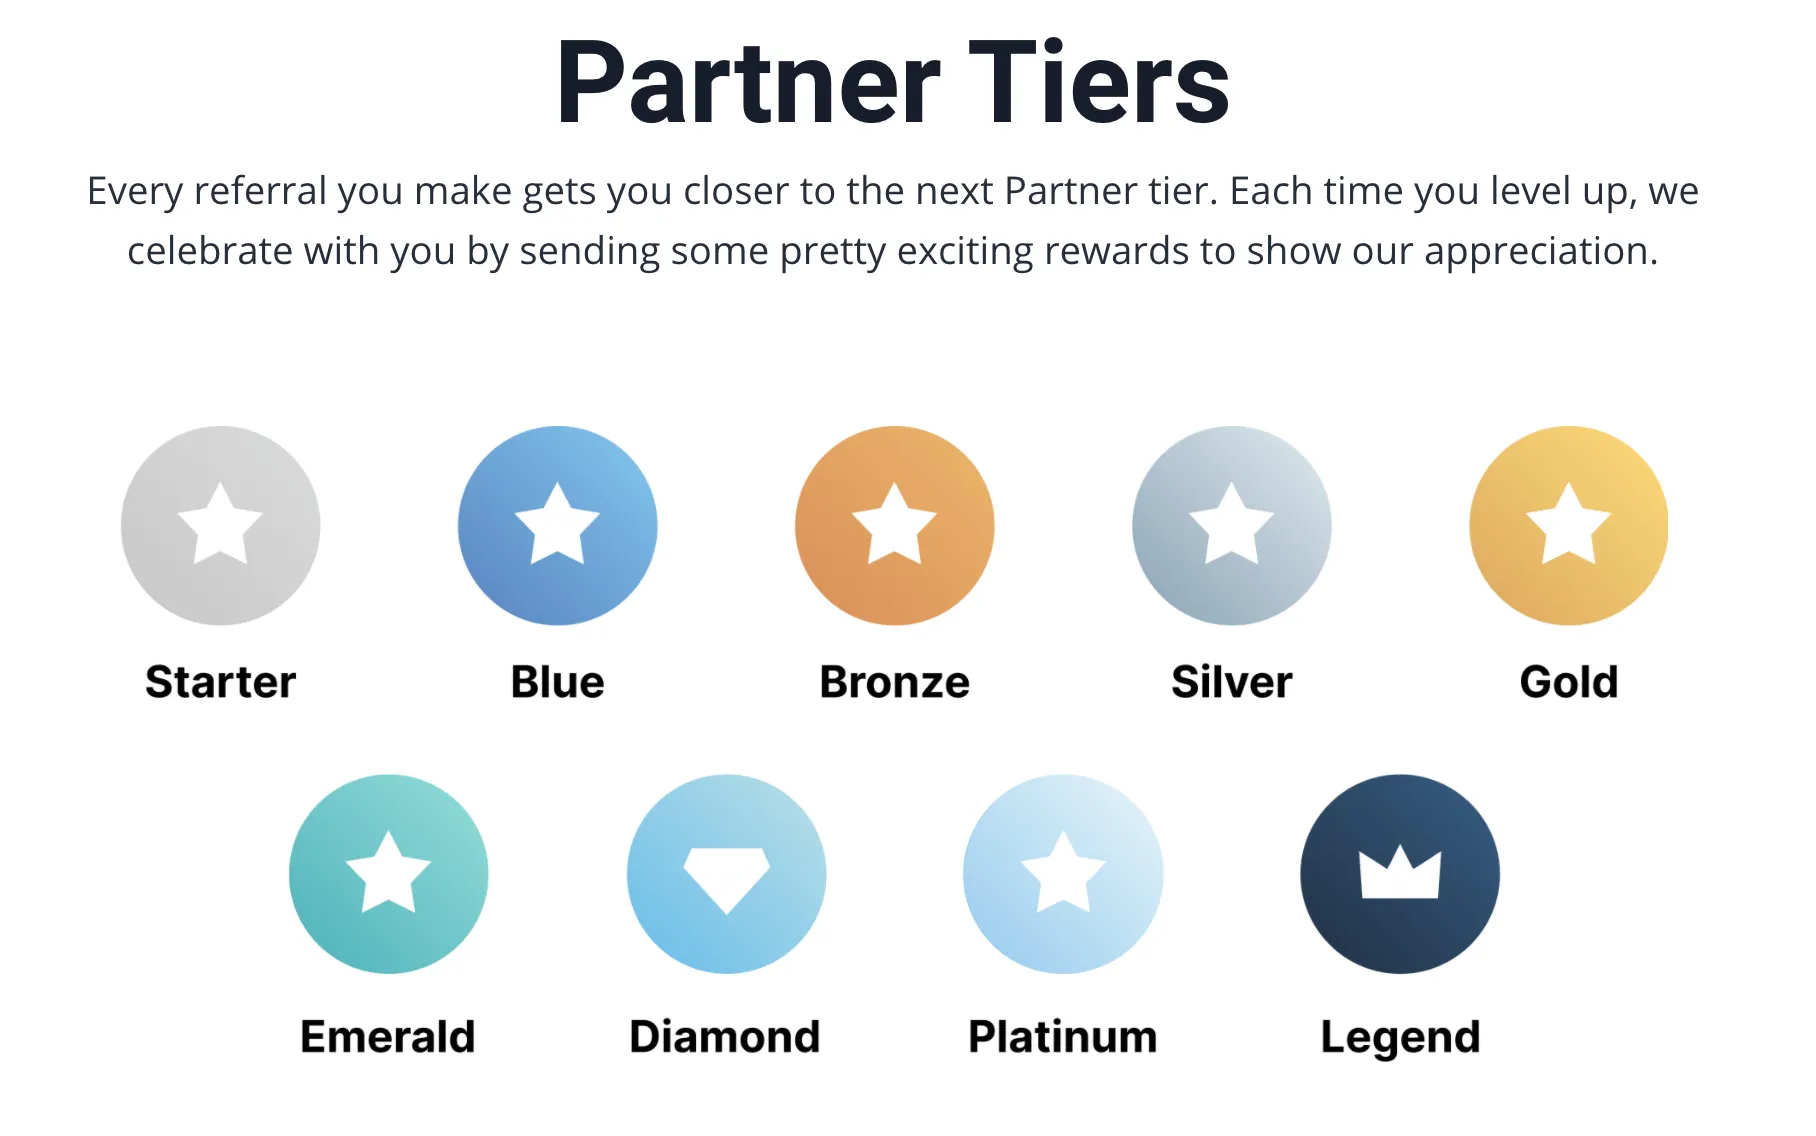 partners tiers overview for Kajabi platform